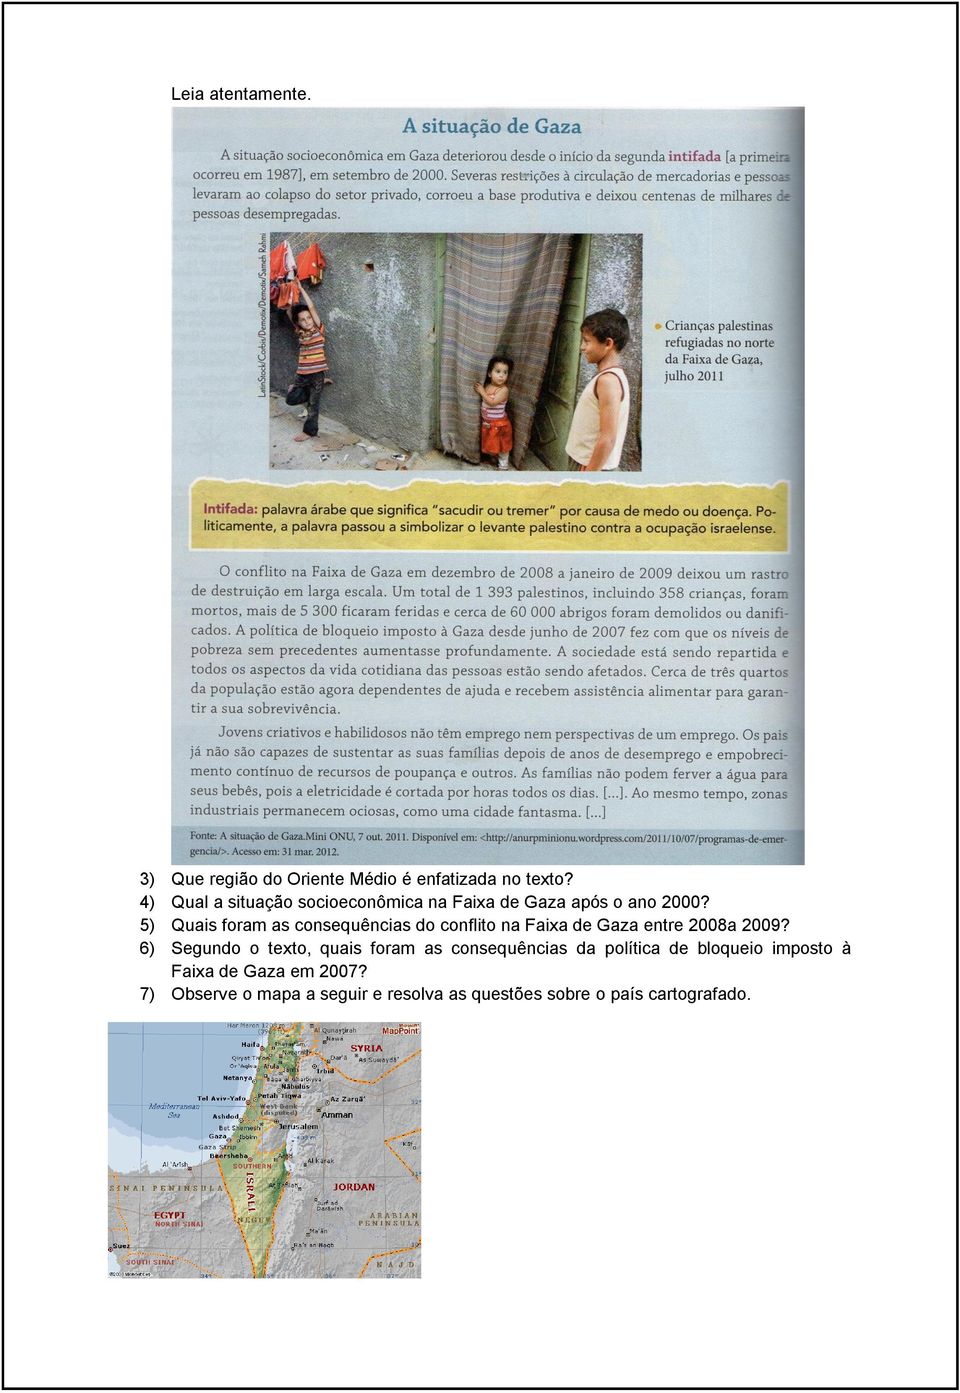 5) Quais foram as consequências do conflito na Faixa de Gaza entre 2008a 2009?